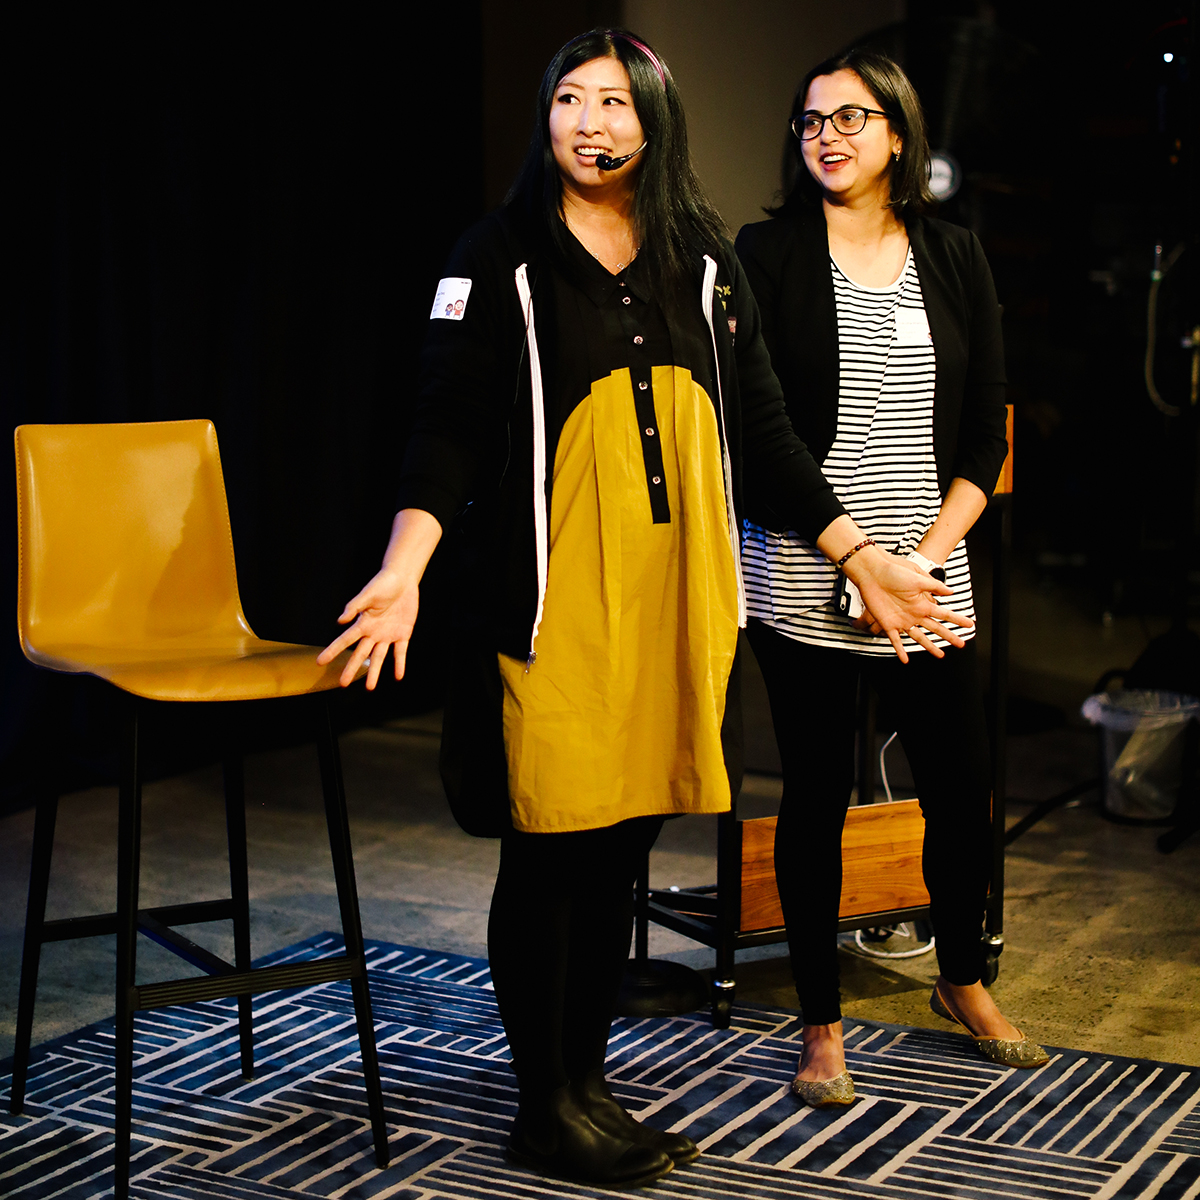 Angie Chang and Sukrutha Bhaduoria speak